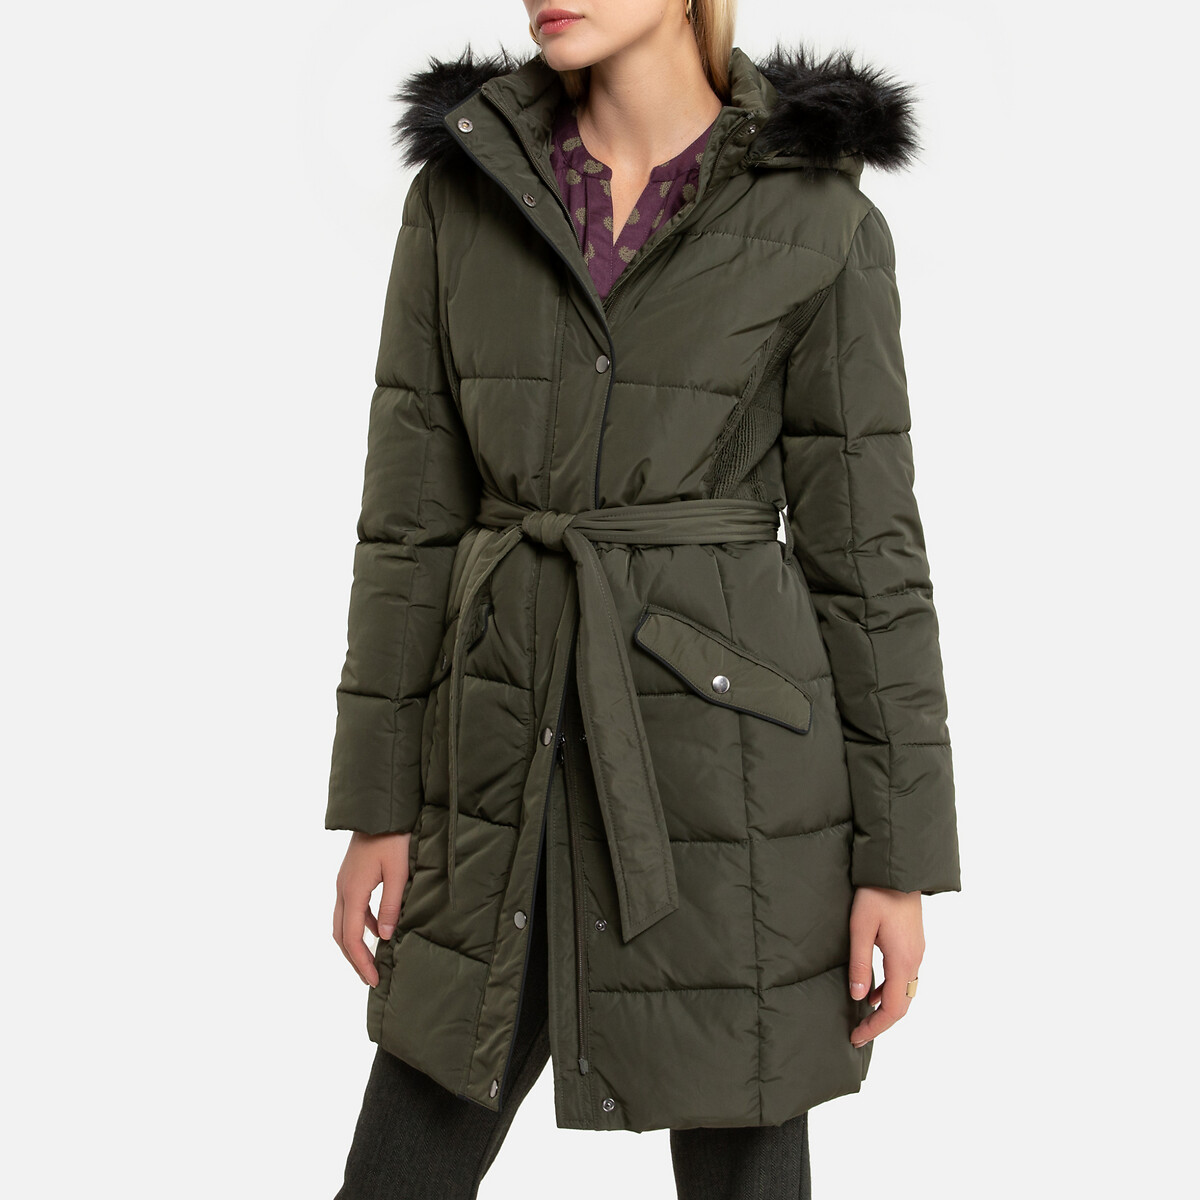 Куртка LaRedoute Стеганая средней длины с капюшоном зимняя модель 40 (FR) - 46 (RUS) зеленый, размер 40 (FR) - 46 (RUS) Стеганая средней длины с капюшоном зимняя модель 40 (FR) - 46 (RUS) зеленый - фото 1